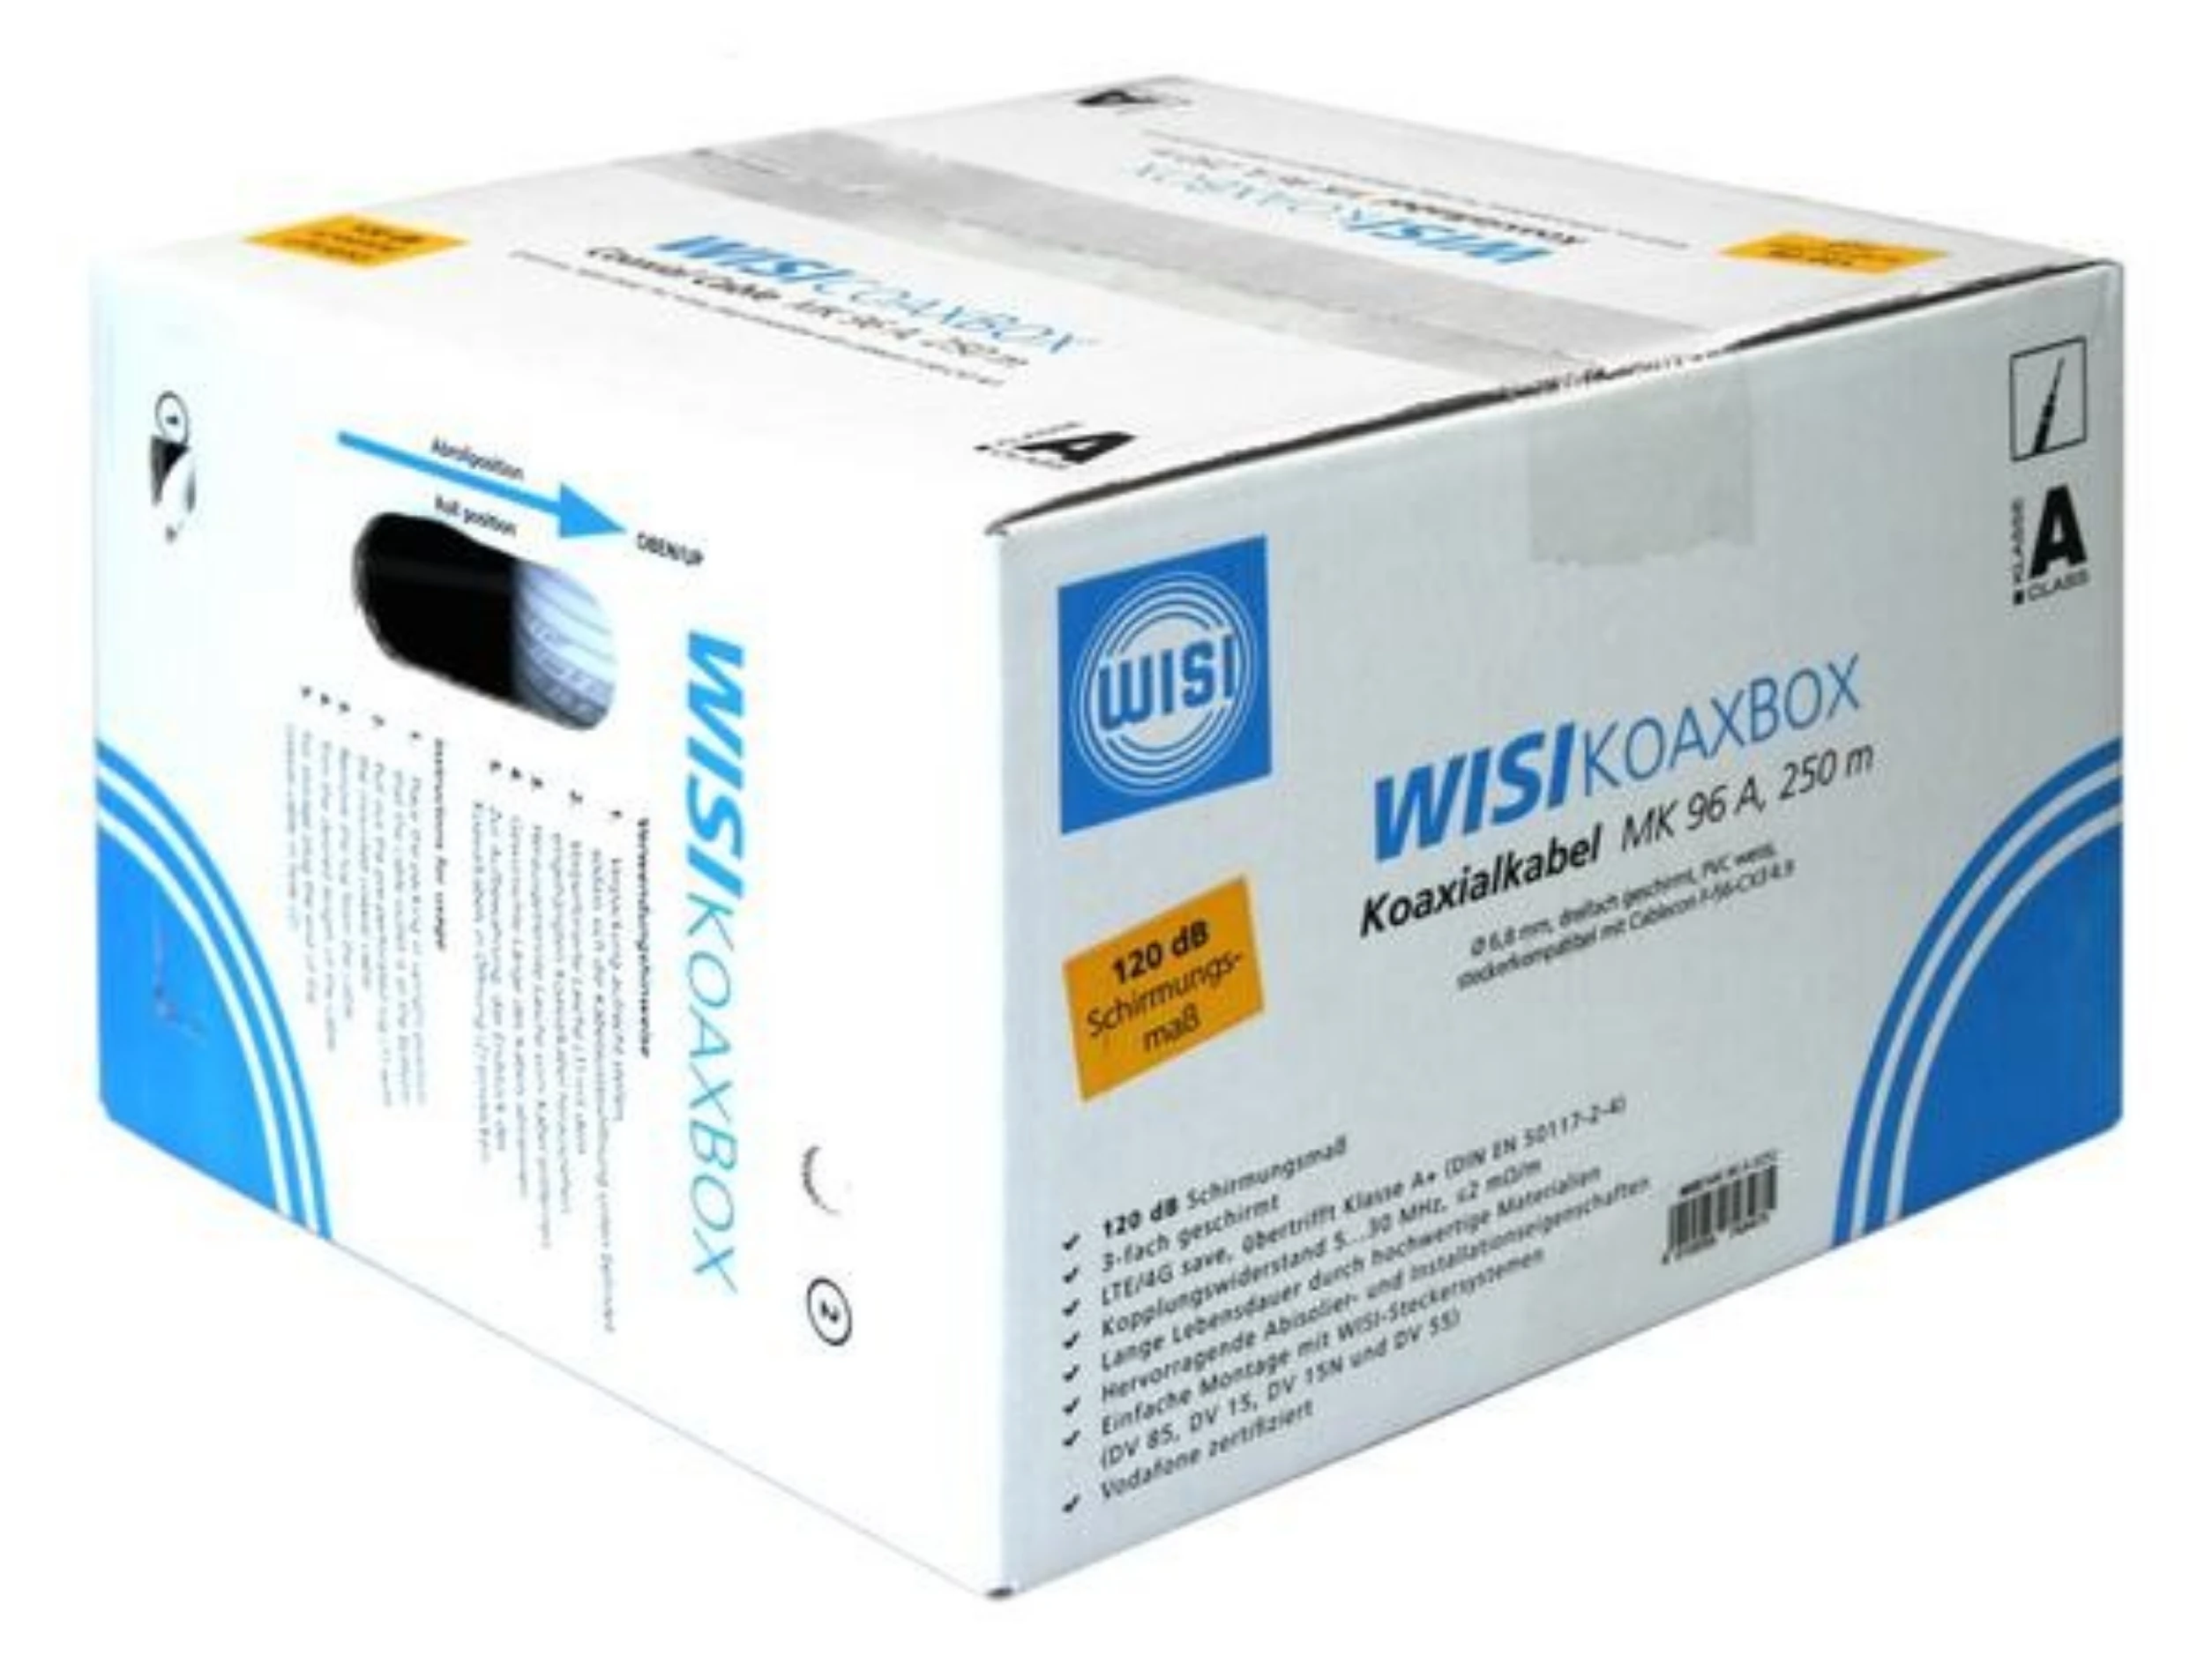 WISI Koaxkabel MK 96 A 0252 250m Abrollkarton-Artikelnummer-200 100 67-von-WISI